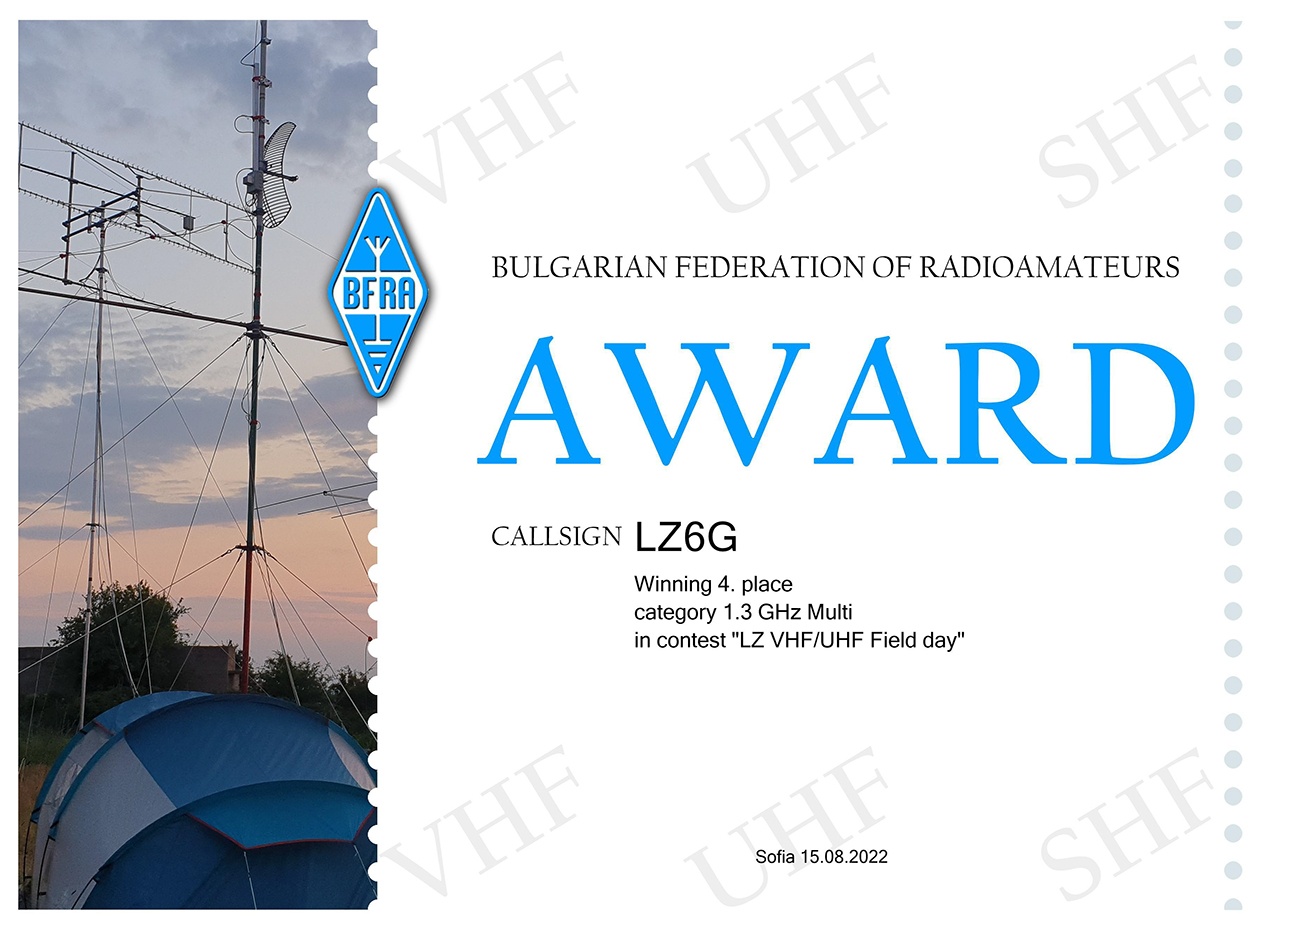 Award 1.3 GHz Multi